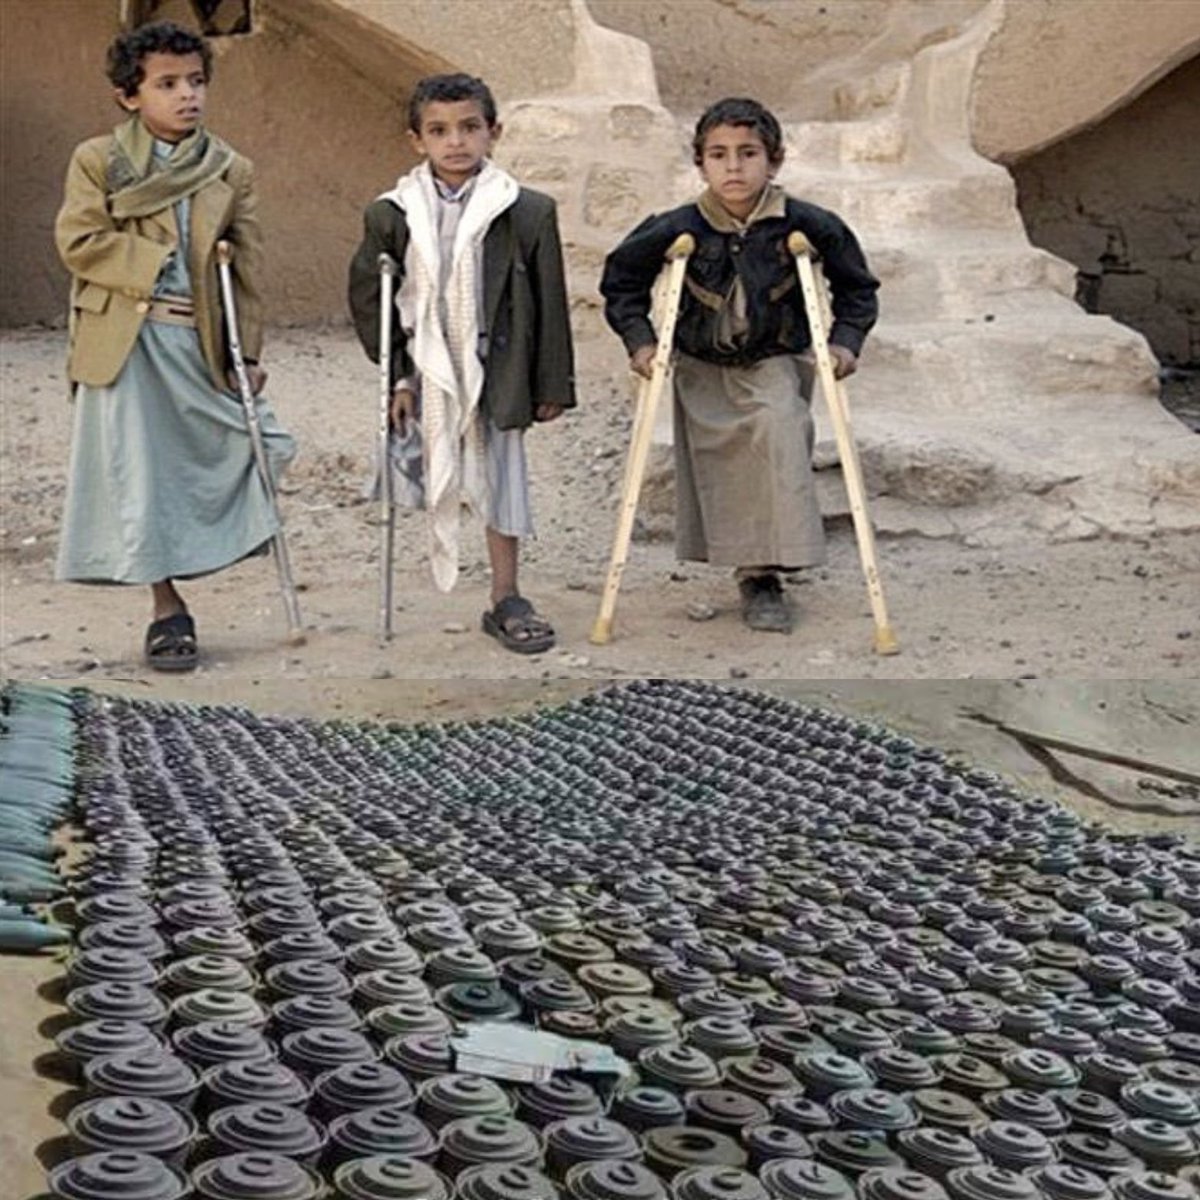 هؤلاء الأطفال ضحايا الغام الحوثيين 

These children are victims of Houthi's landmines

#اليوم_الدولي_للتوعية_بخطر_الألغام